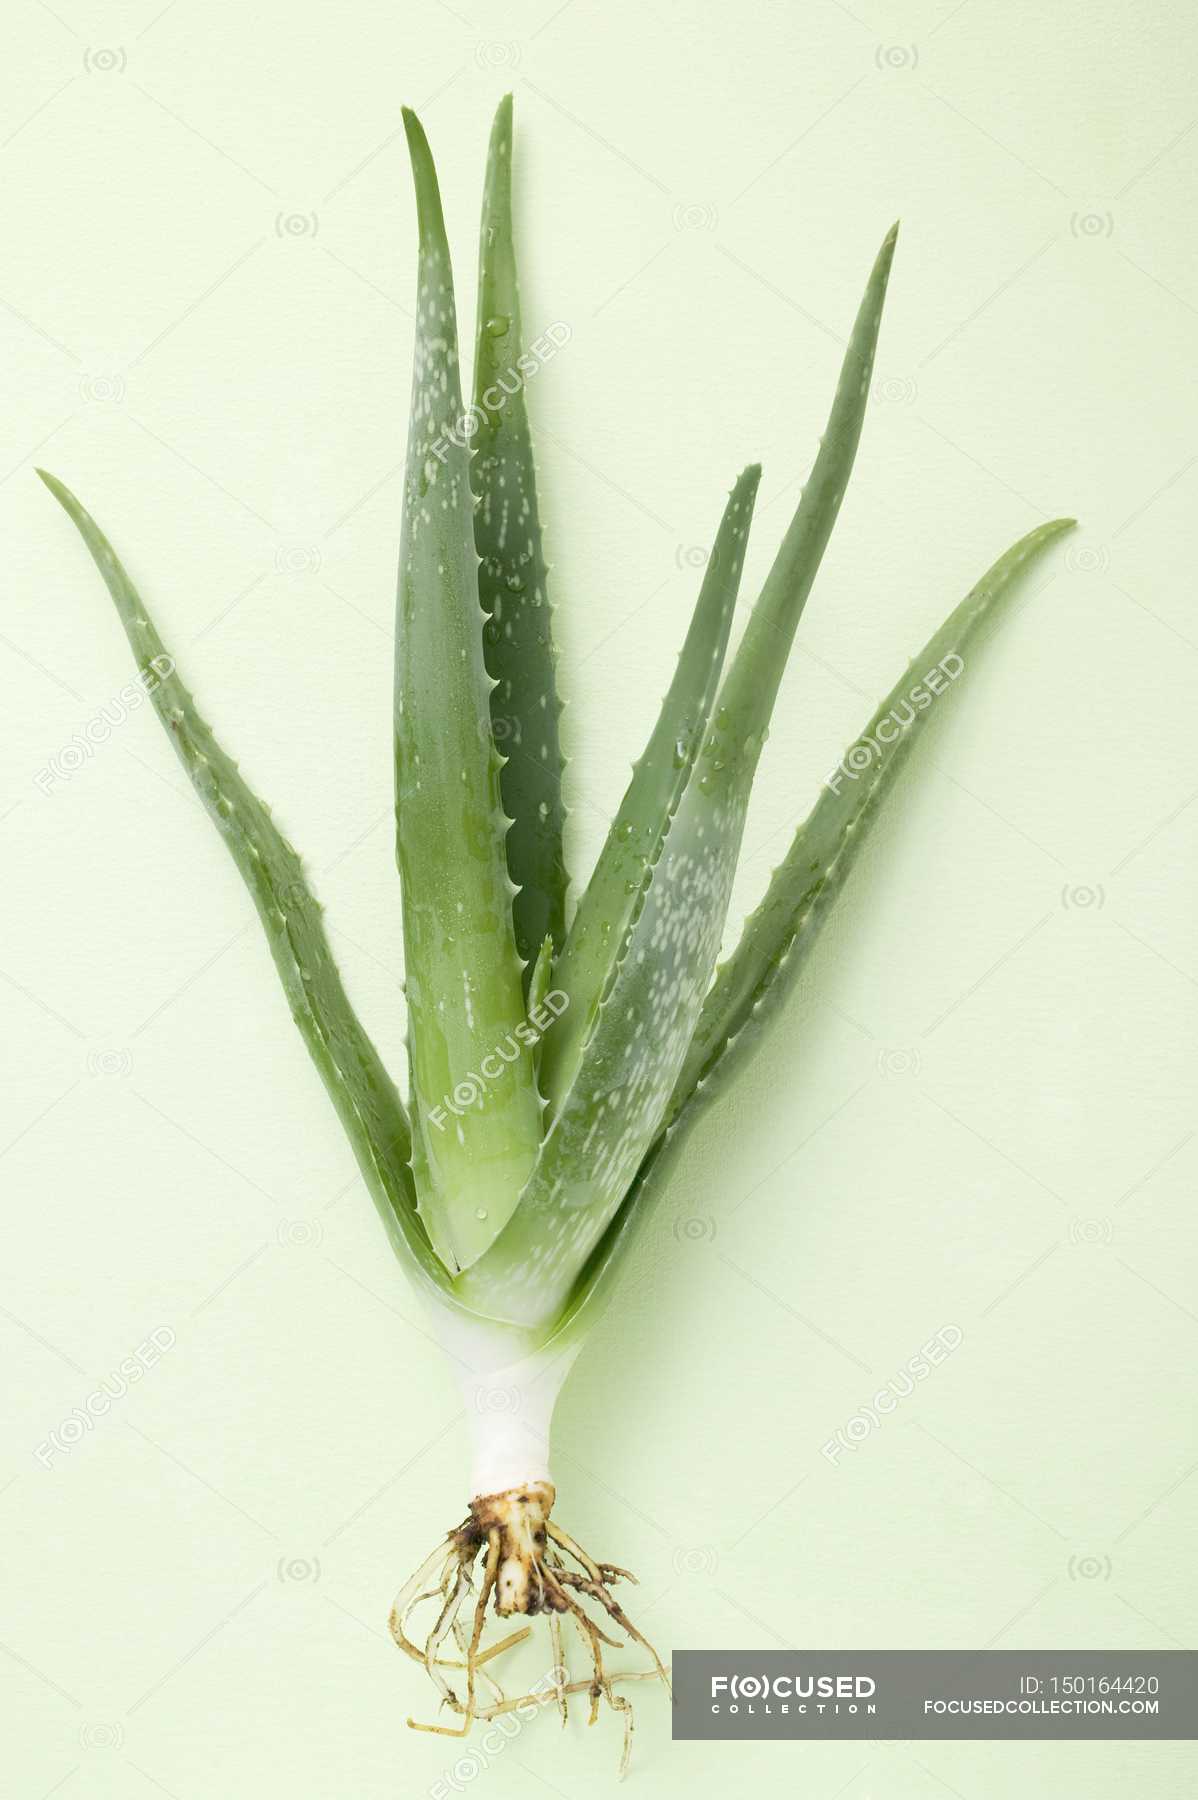 Aloe vera on white background — nature, shape - Stock Photo | #150164420